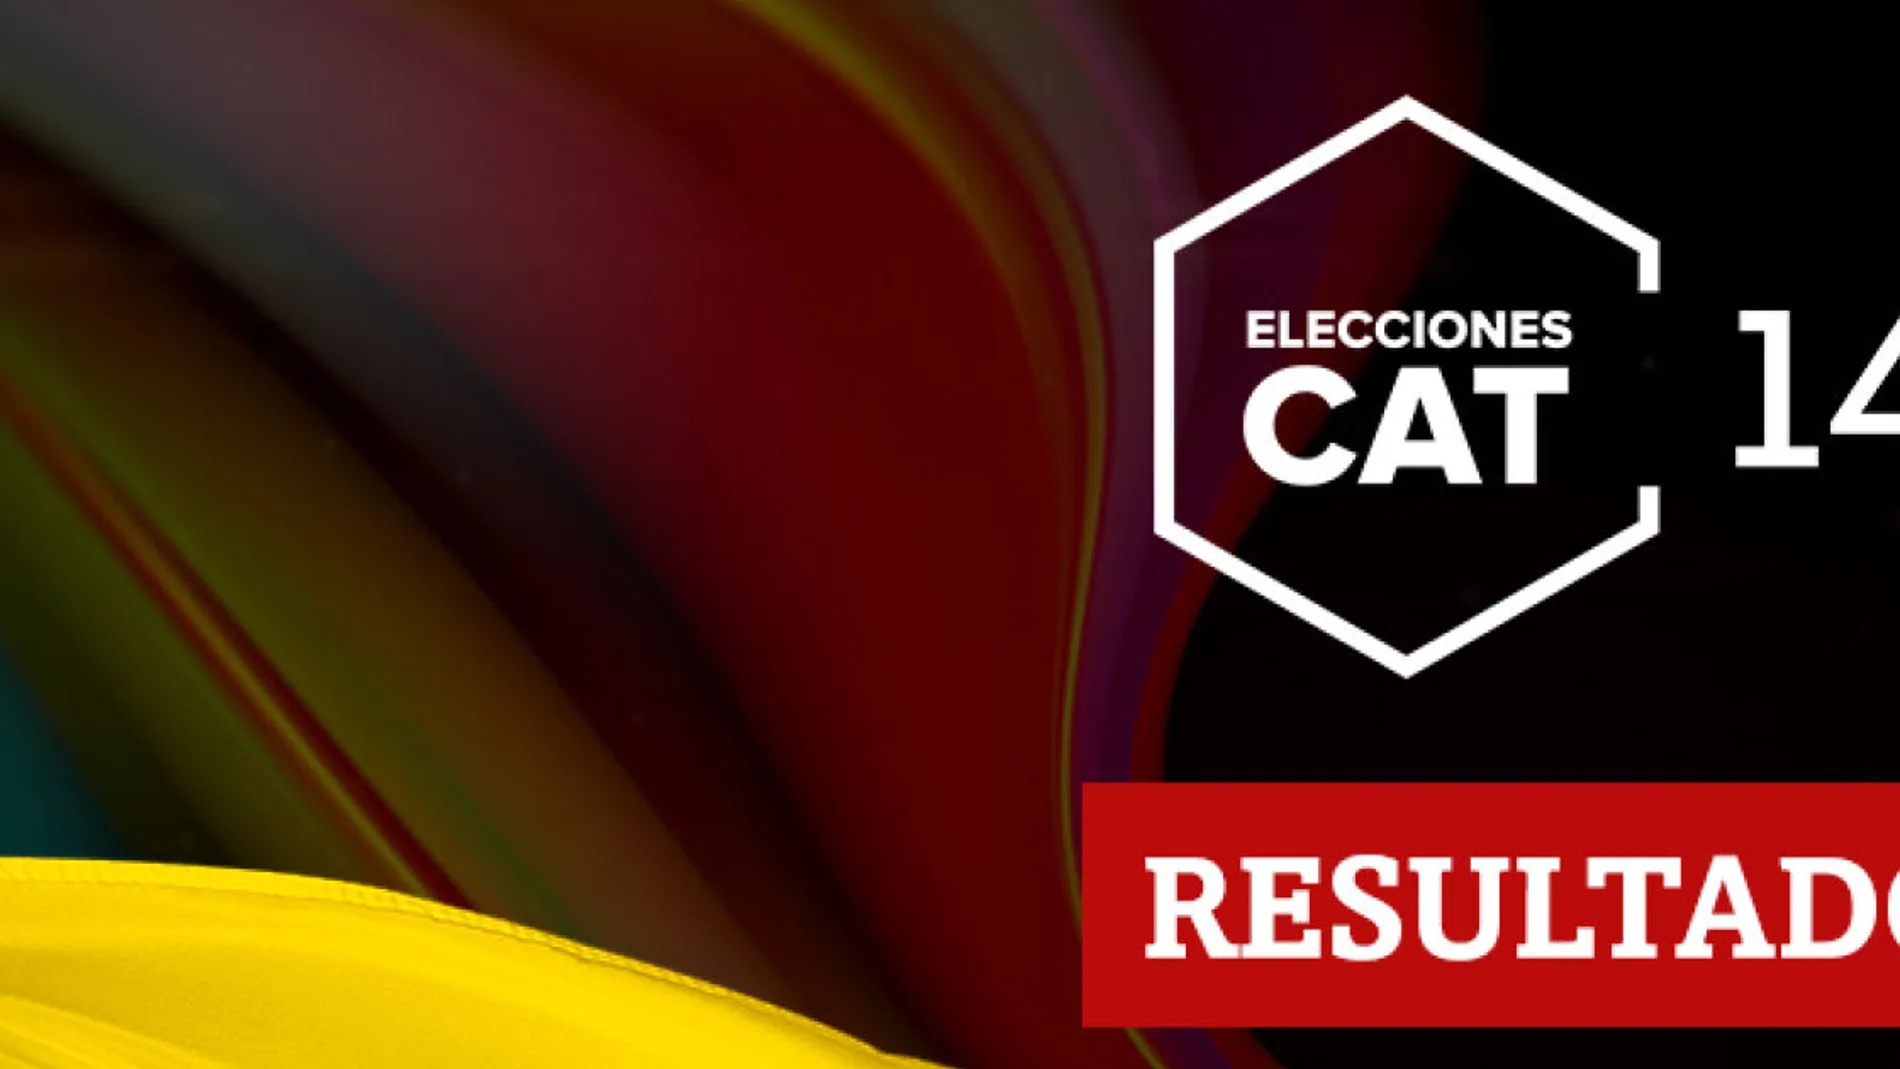 Resultados en La Secuita de las elecciones catalanas del 14F 2021